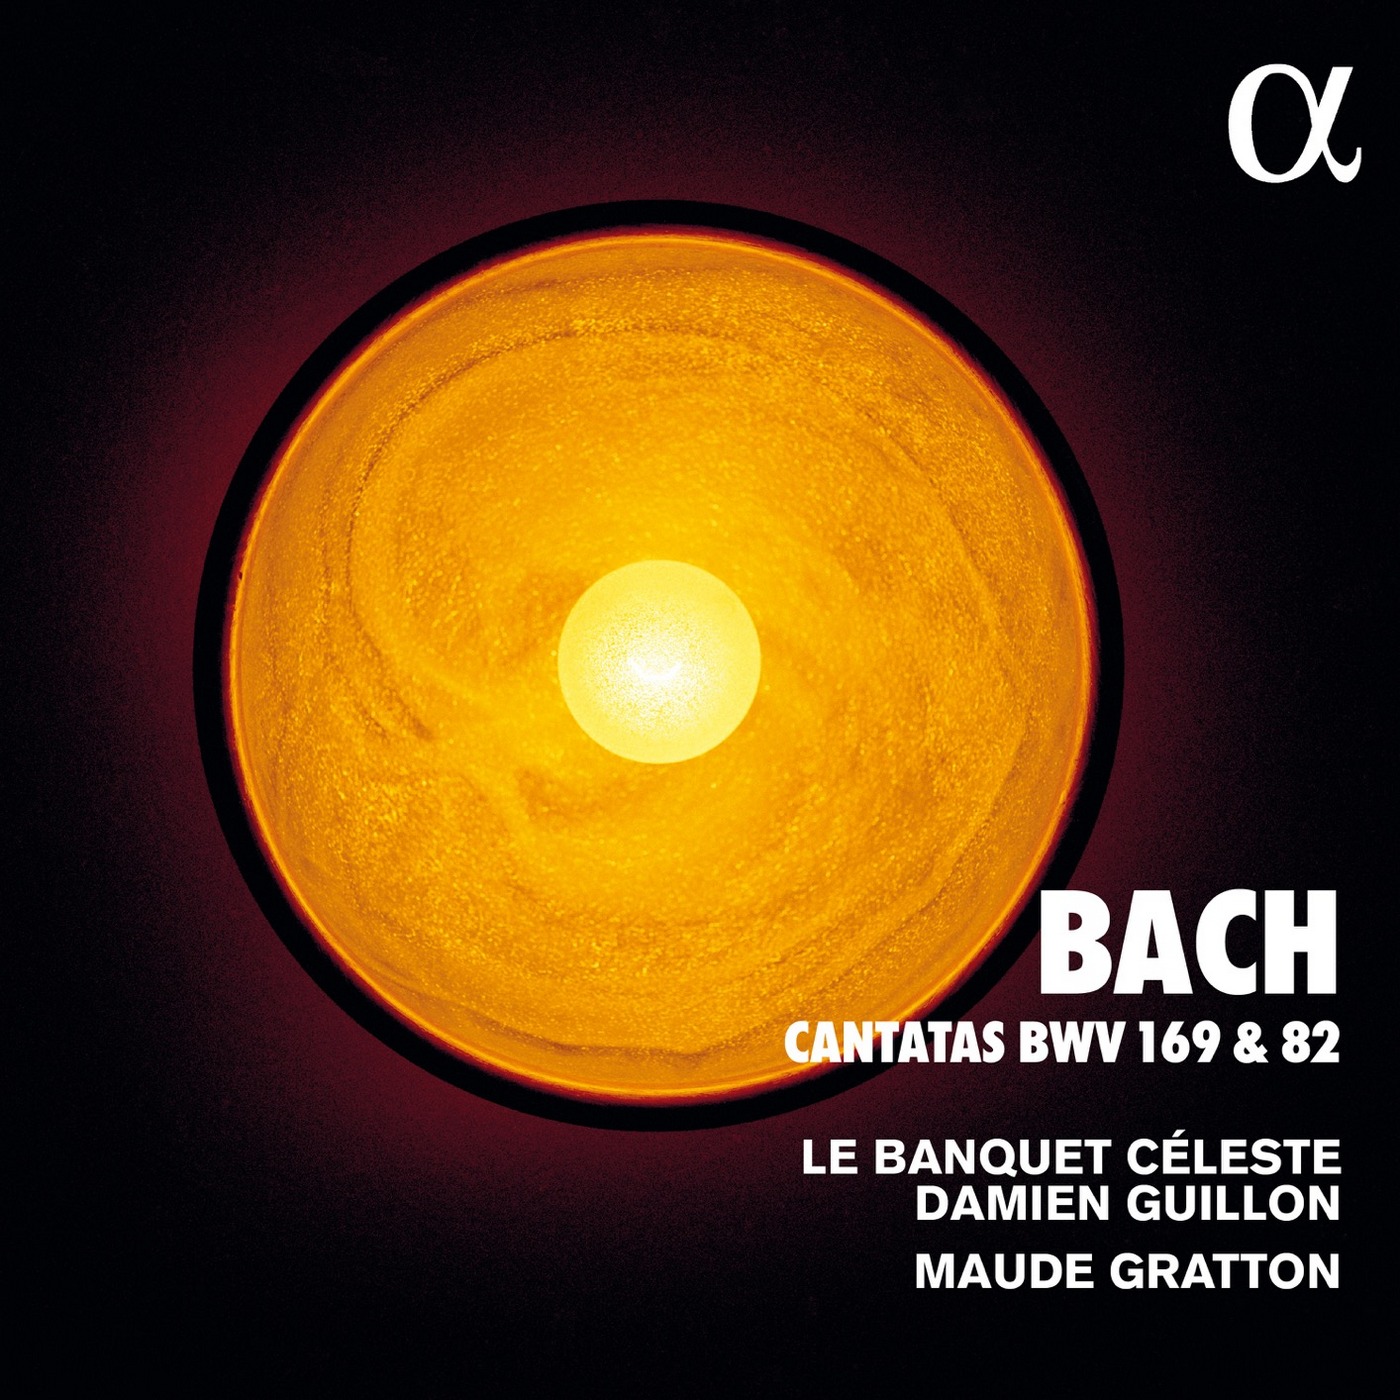 Le Banquet Celeste, Damien Guillon & Maude Gratton - Bach: Cantatas BWV 169 & 82 (2019) [FLAC 24bit/96kHz]